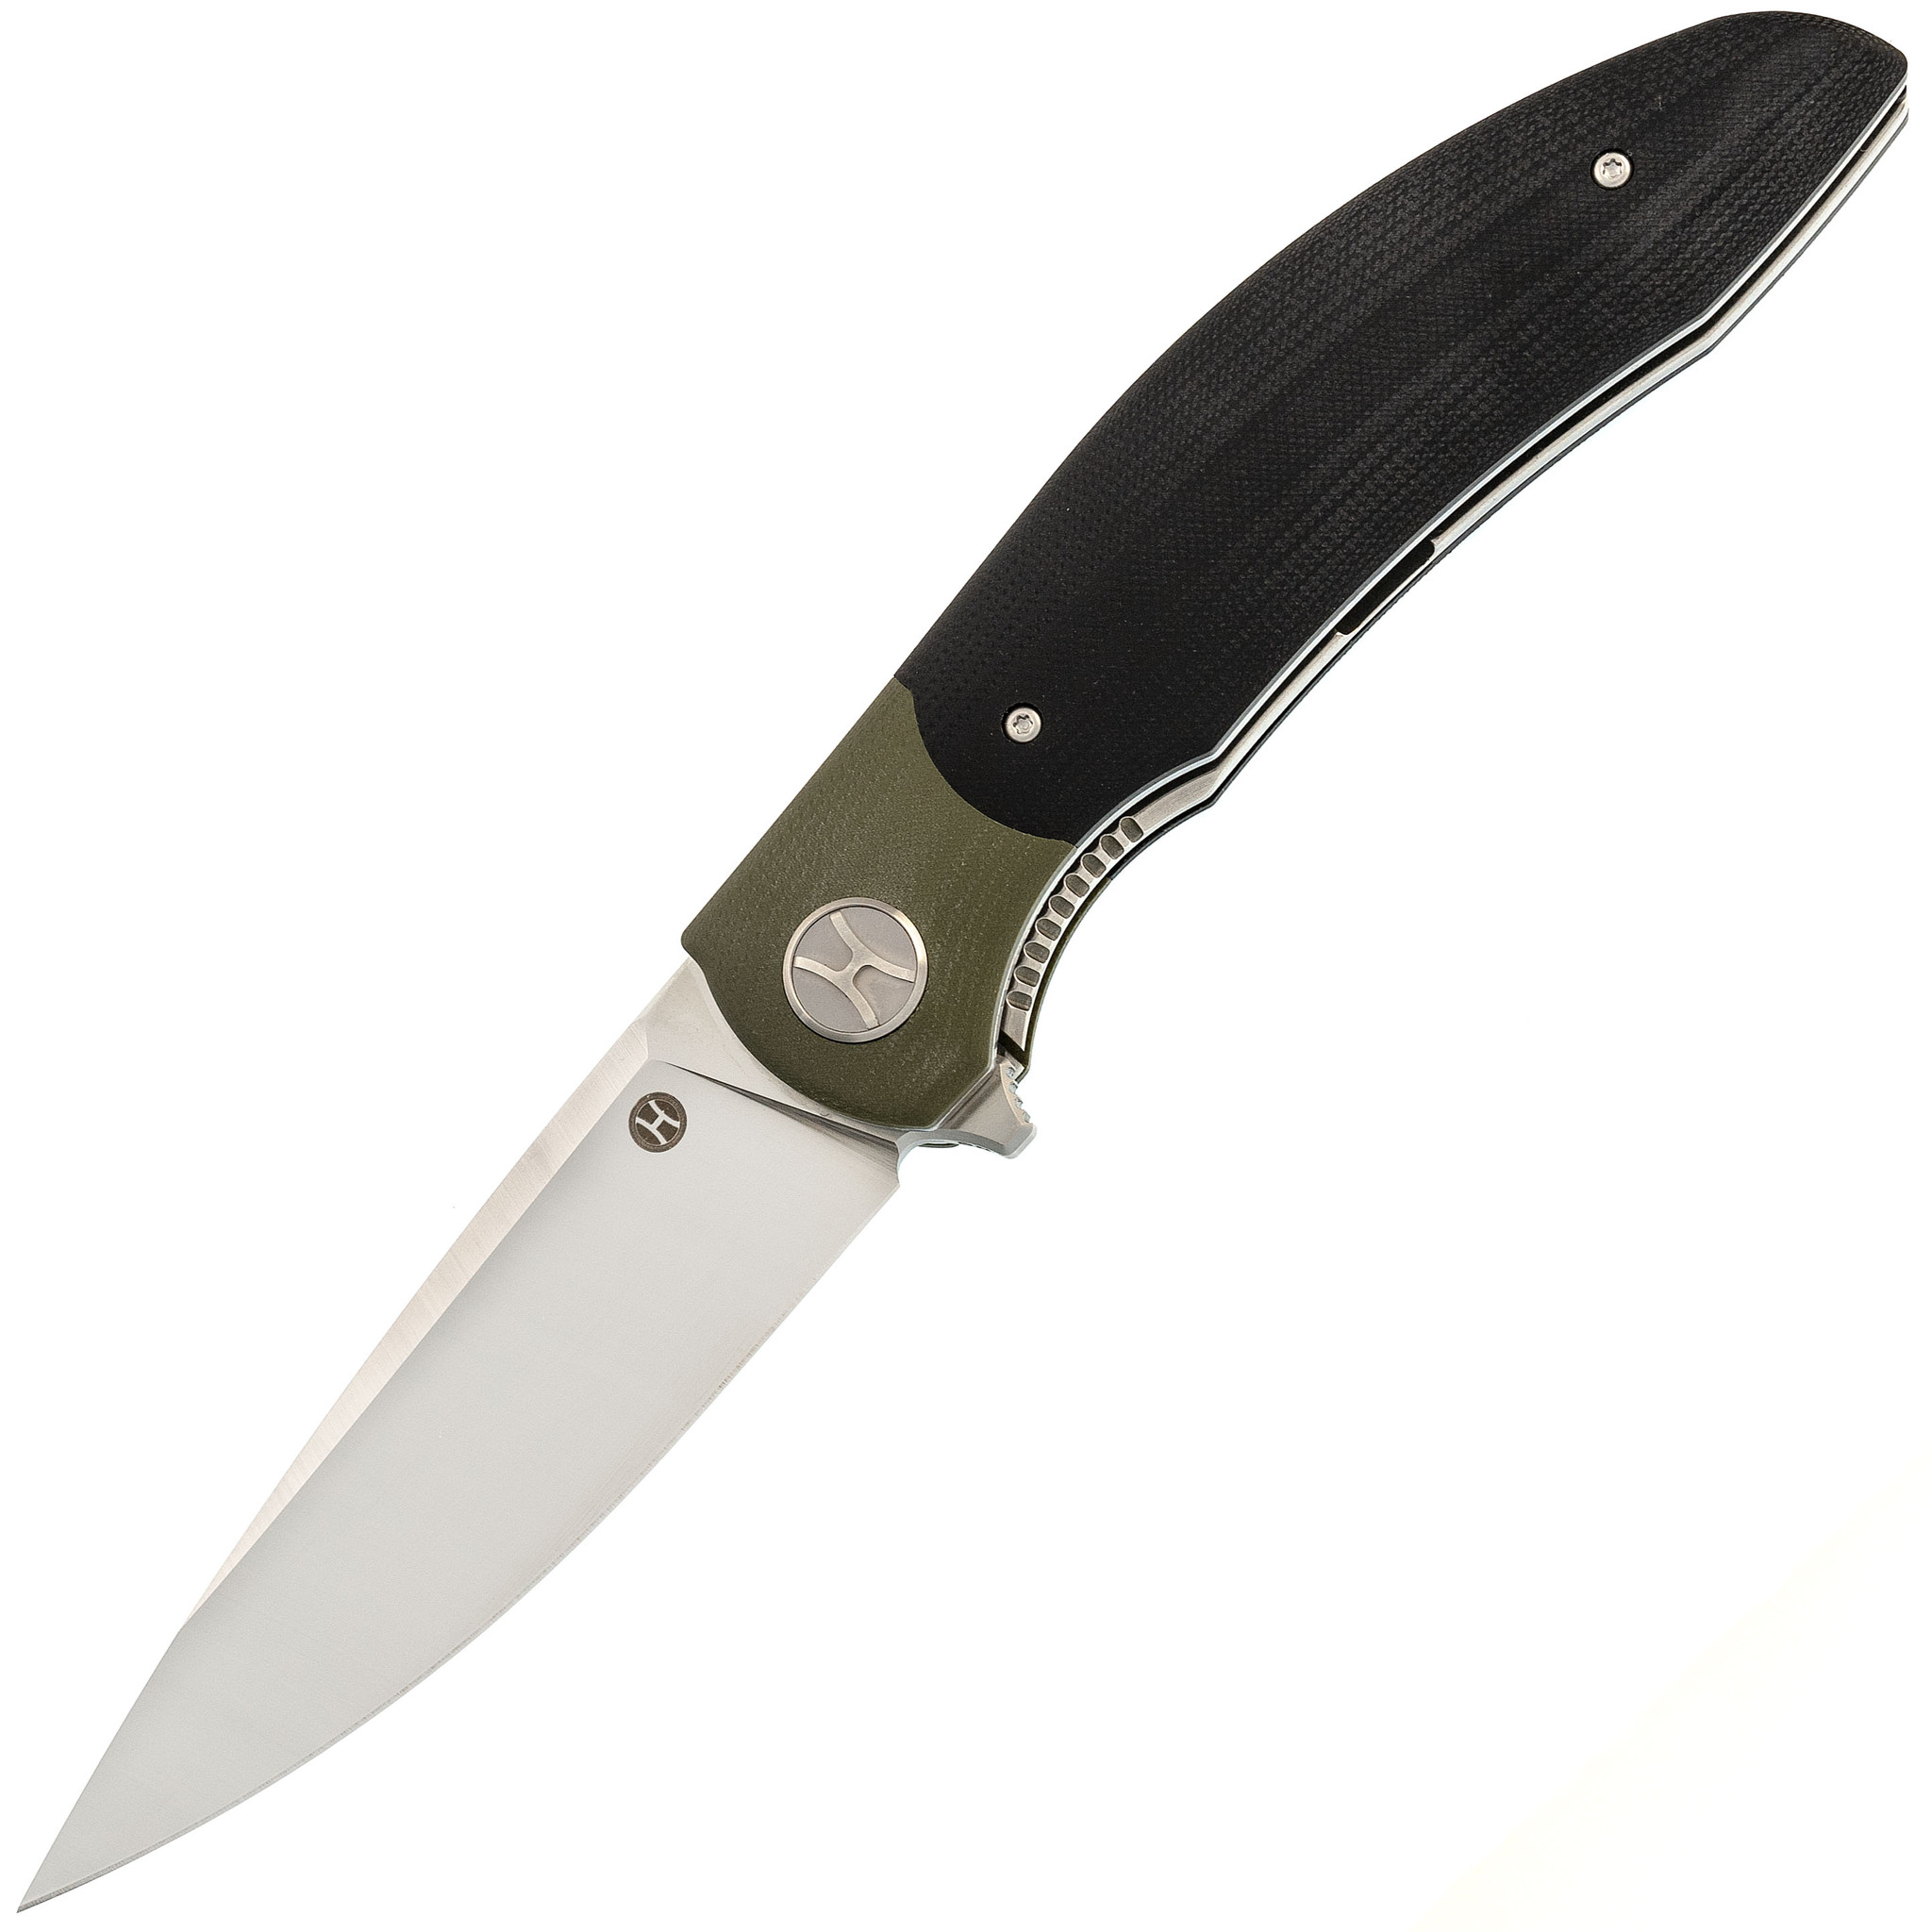 Большой складной нож Honor Tirex Black, сталь D2, рукоять G10